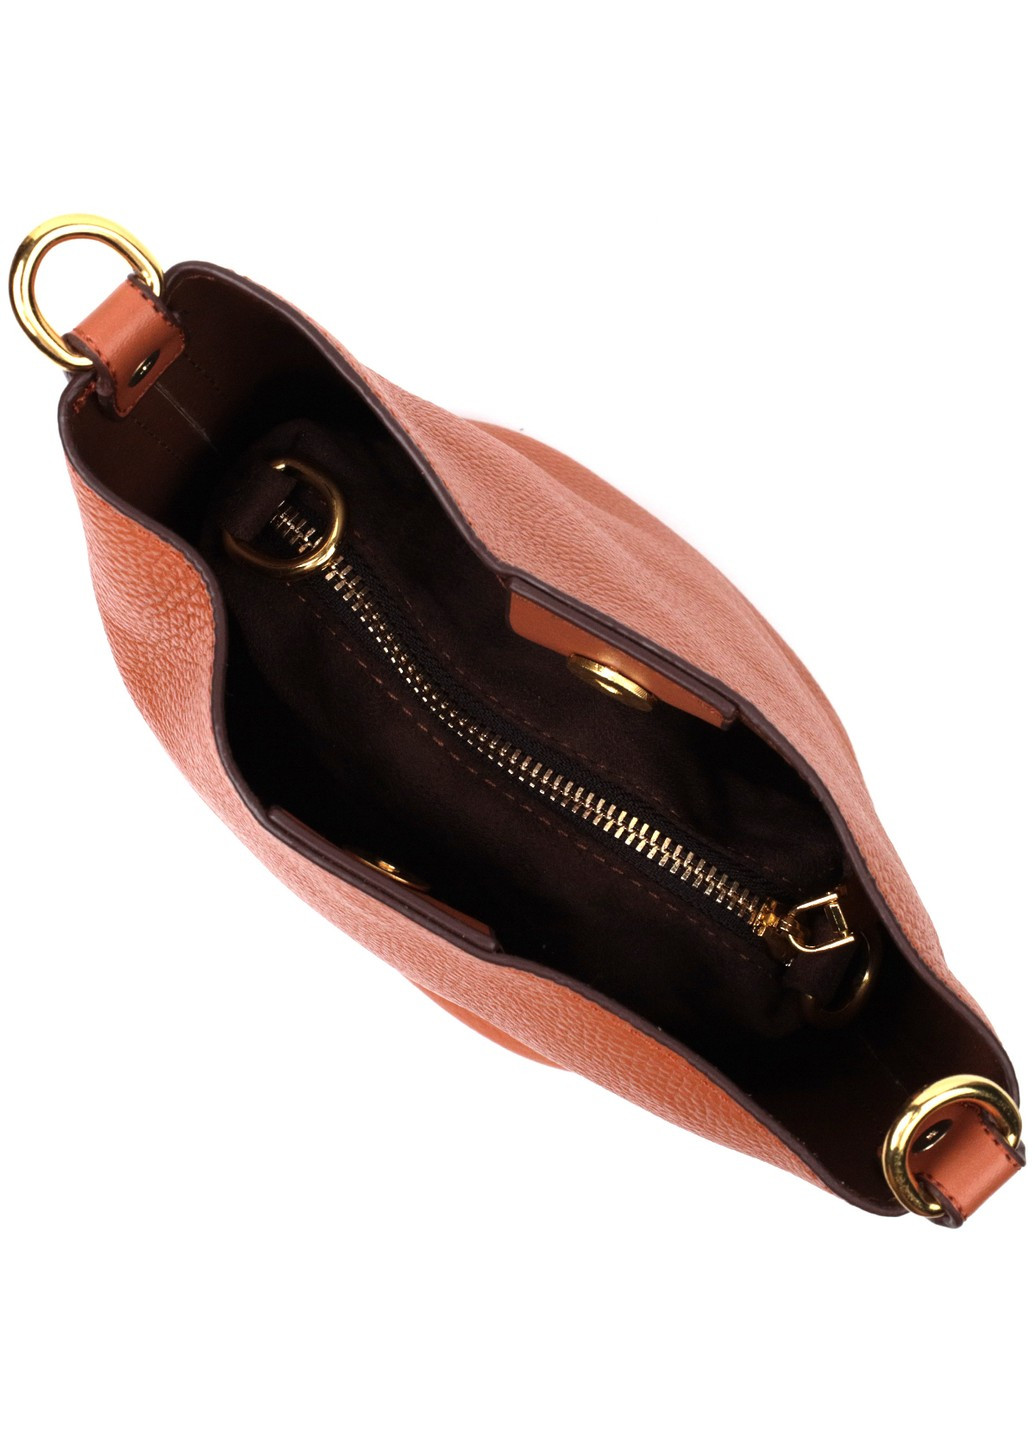 Небольшая женская сумка с автономной косметичкой внутри из натуральной кожи 22366 Коричневая Vintage (276461838)